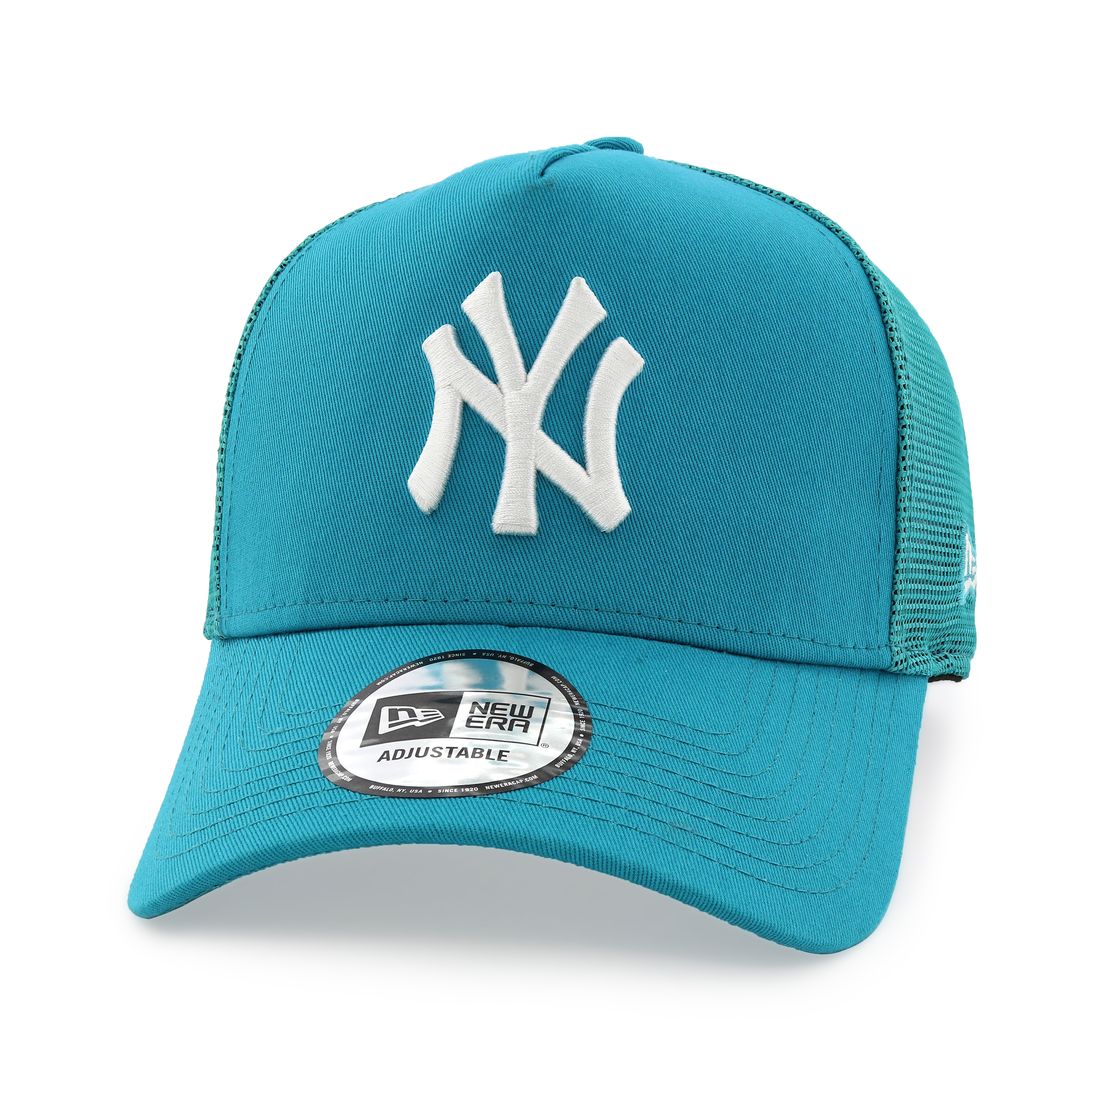 قبعة للرجال تحمل علامة فريق يانكيز نيويويورك تونال ميش تراكر من نيو إيرا لون تركواز